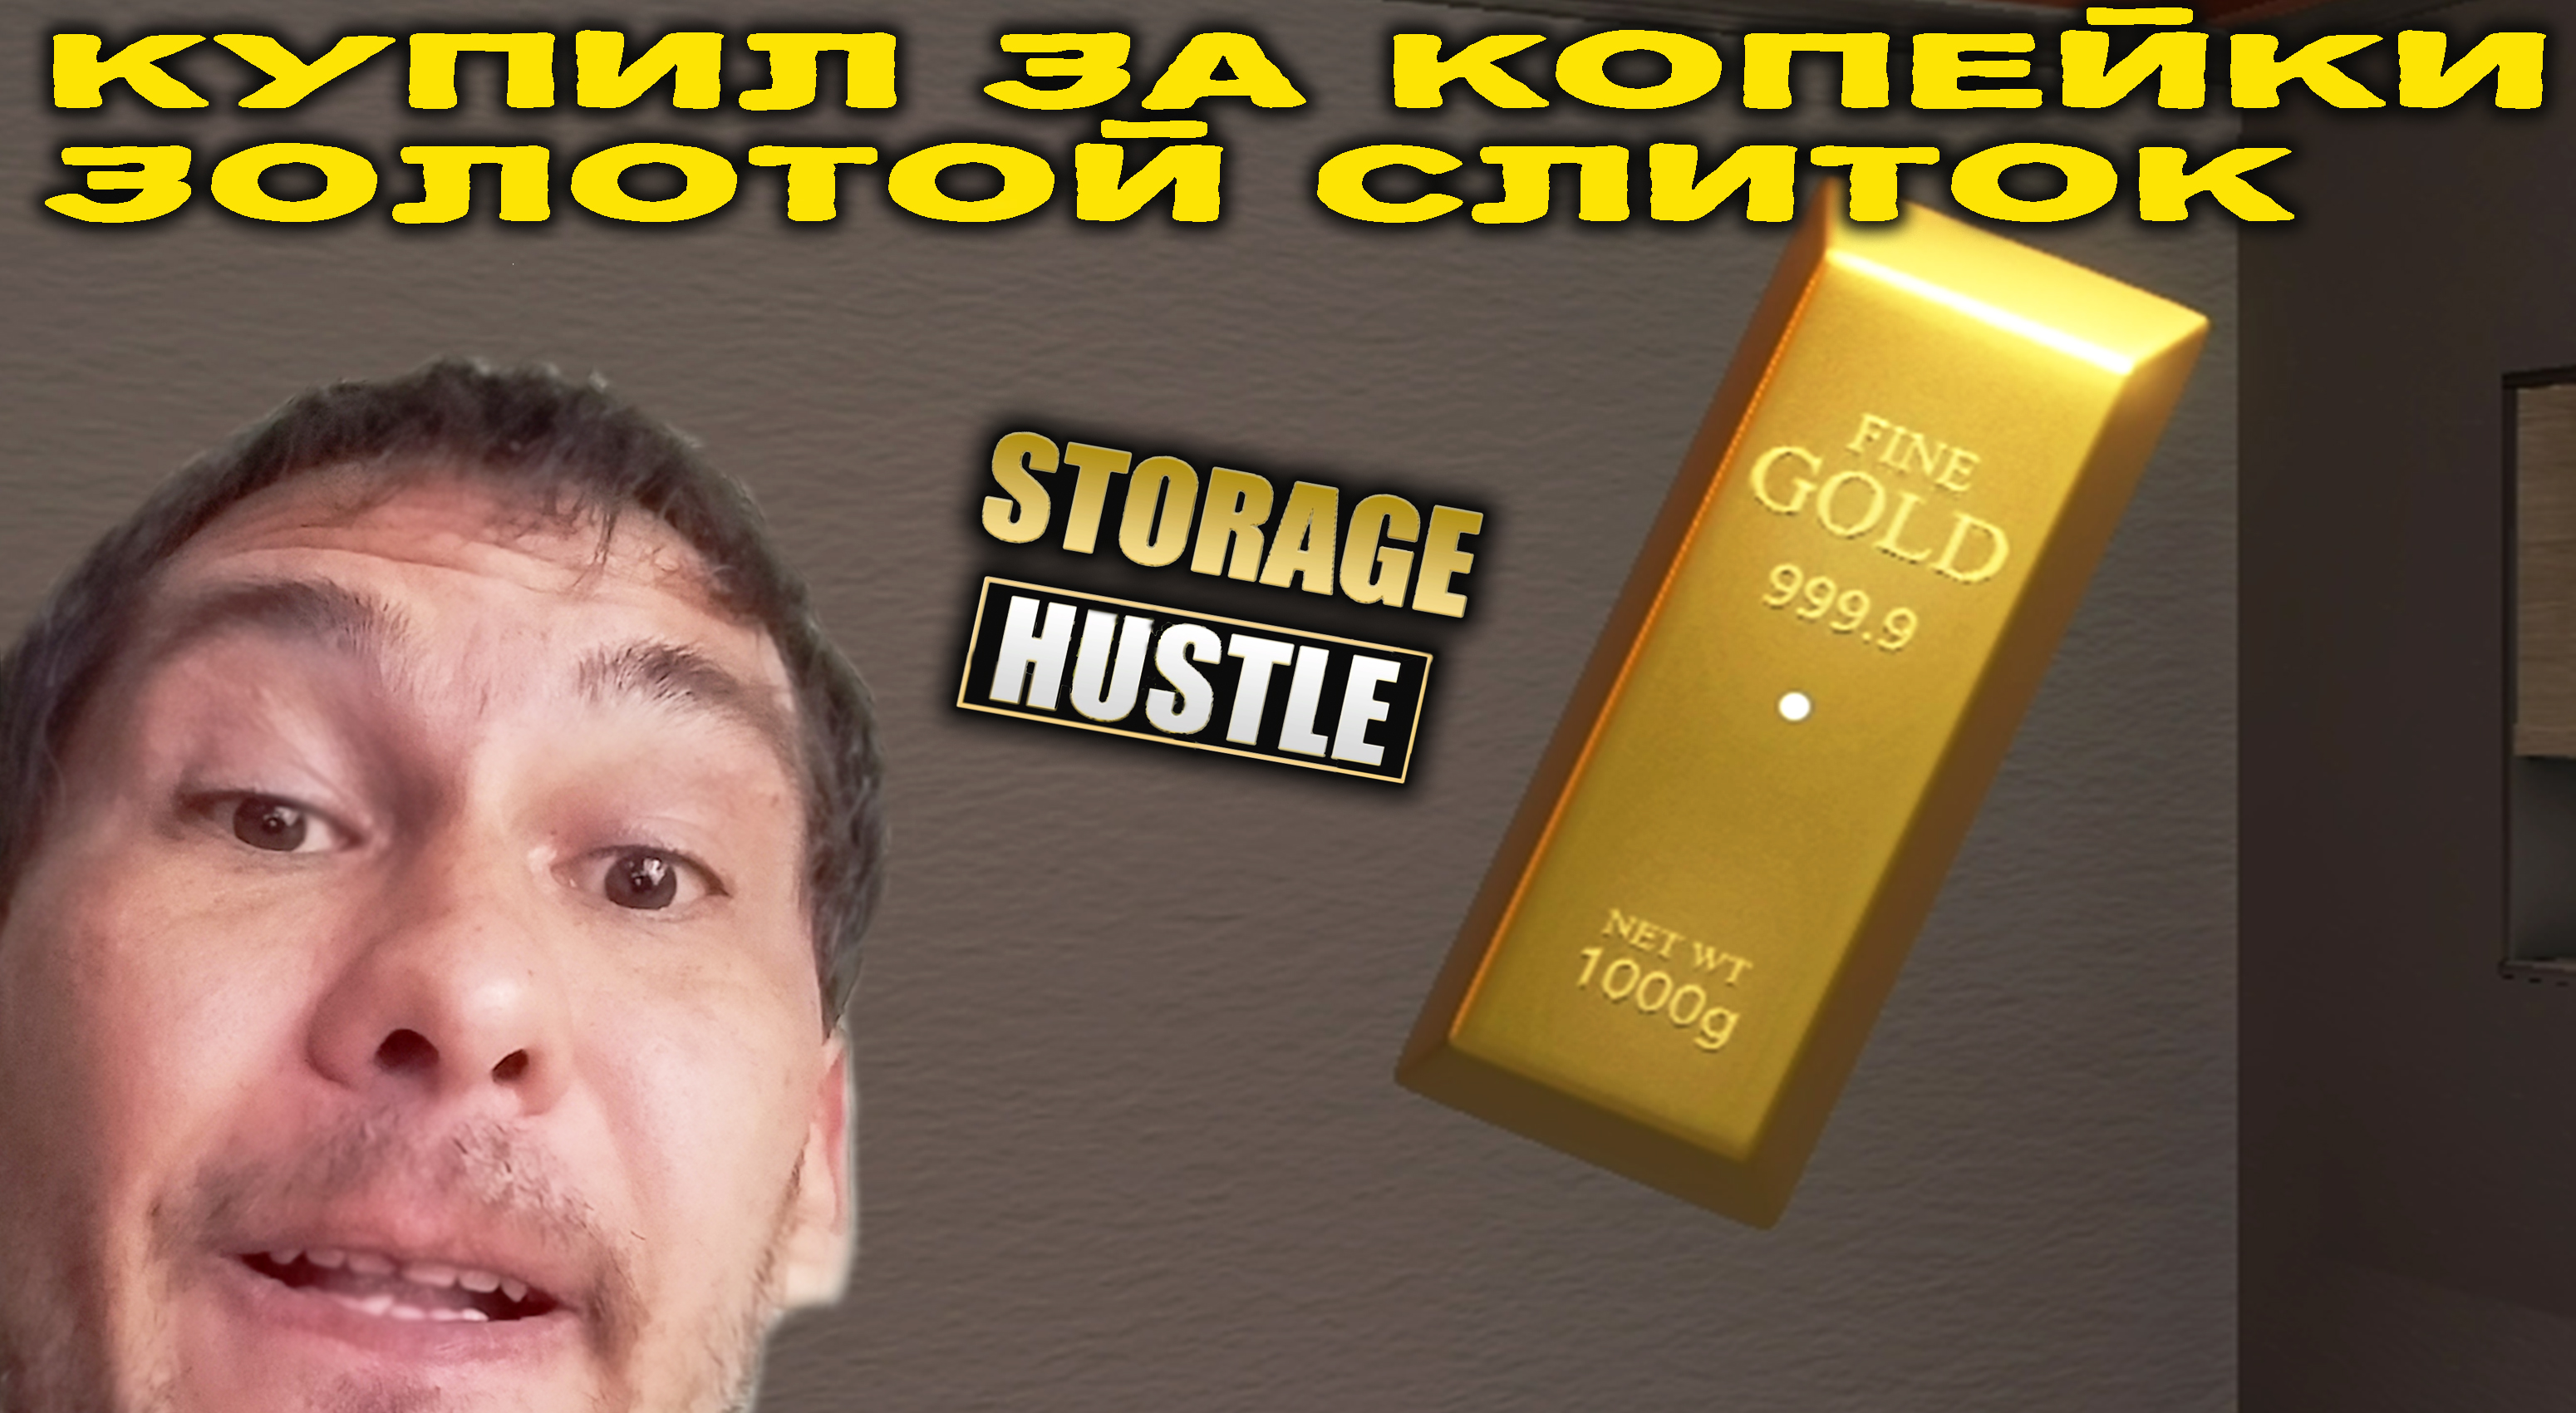 ЗОЛОТО ВЫСШЕЙ ПРОБЫ ◈ Storage Hustle #5